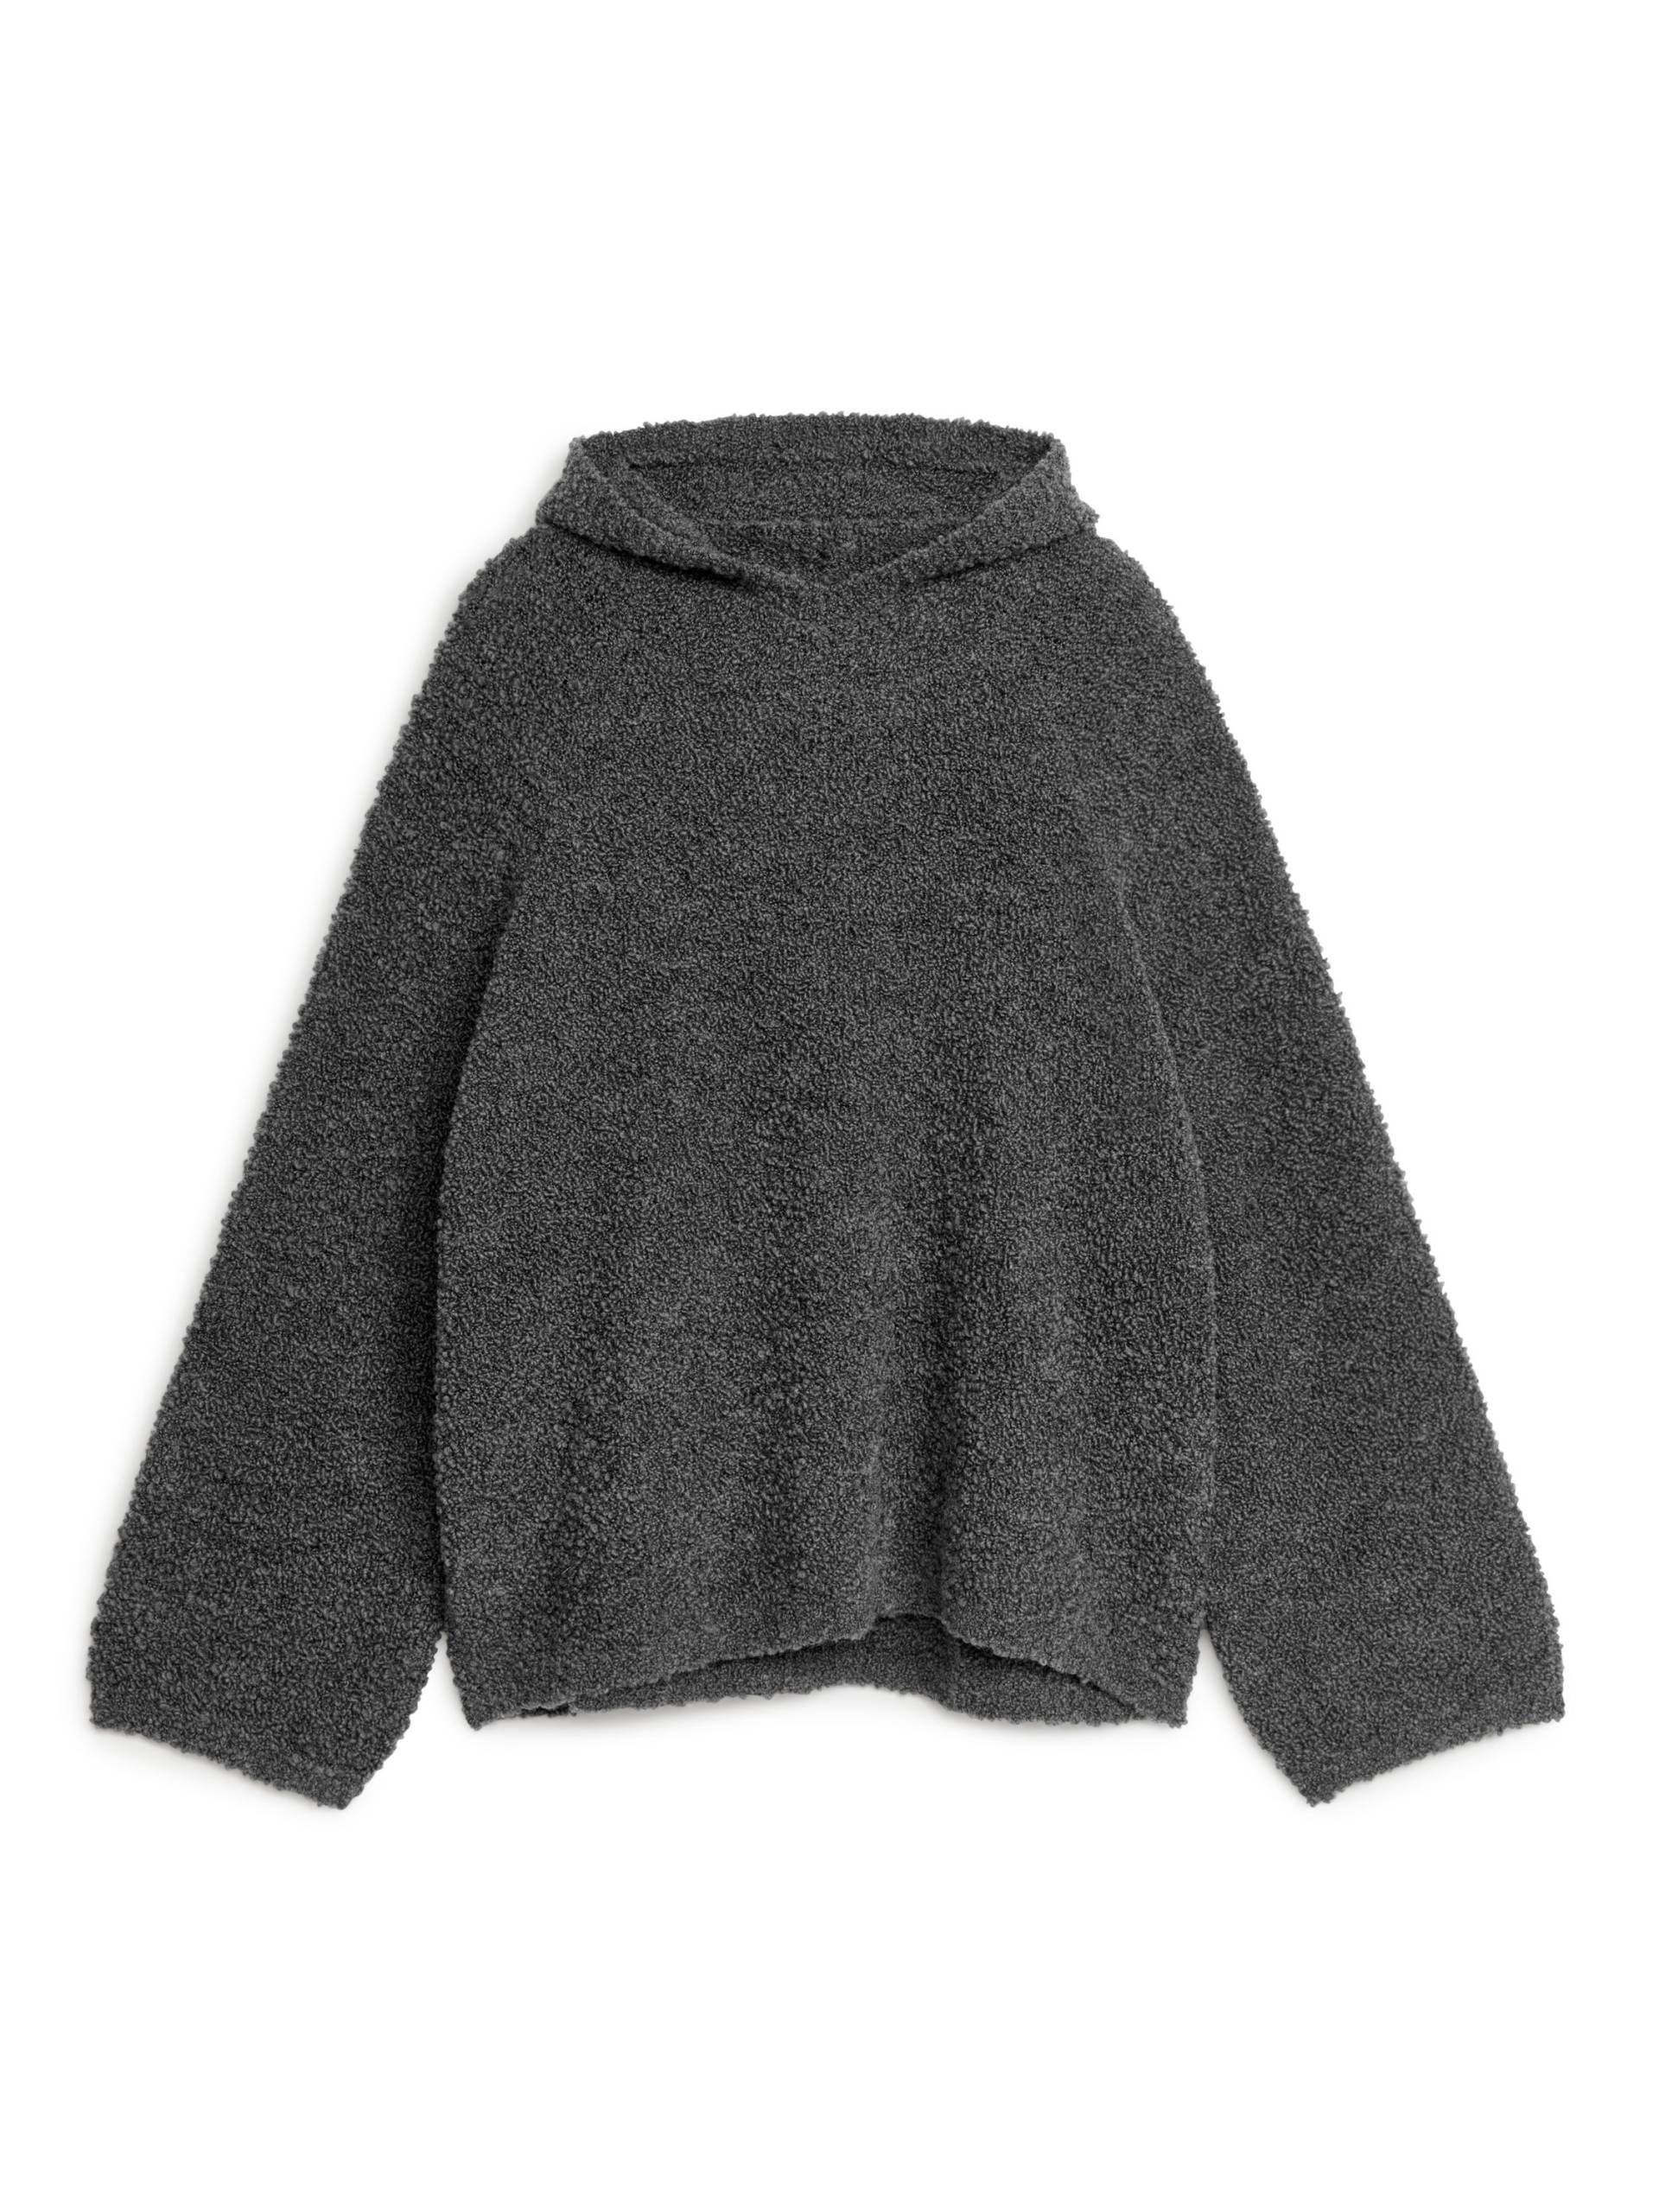 Arket Kapuzenpullover aus Wolle Dunkelgrau in Größe S. Farbe: Dark grey von Arket